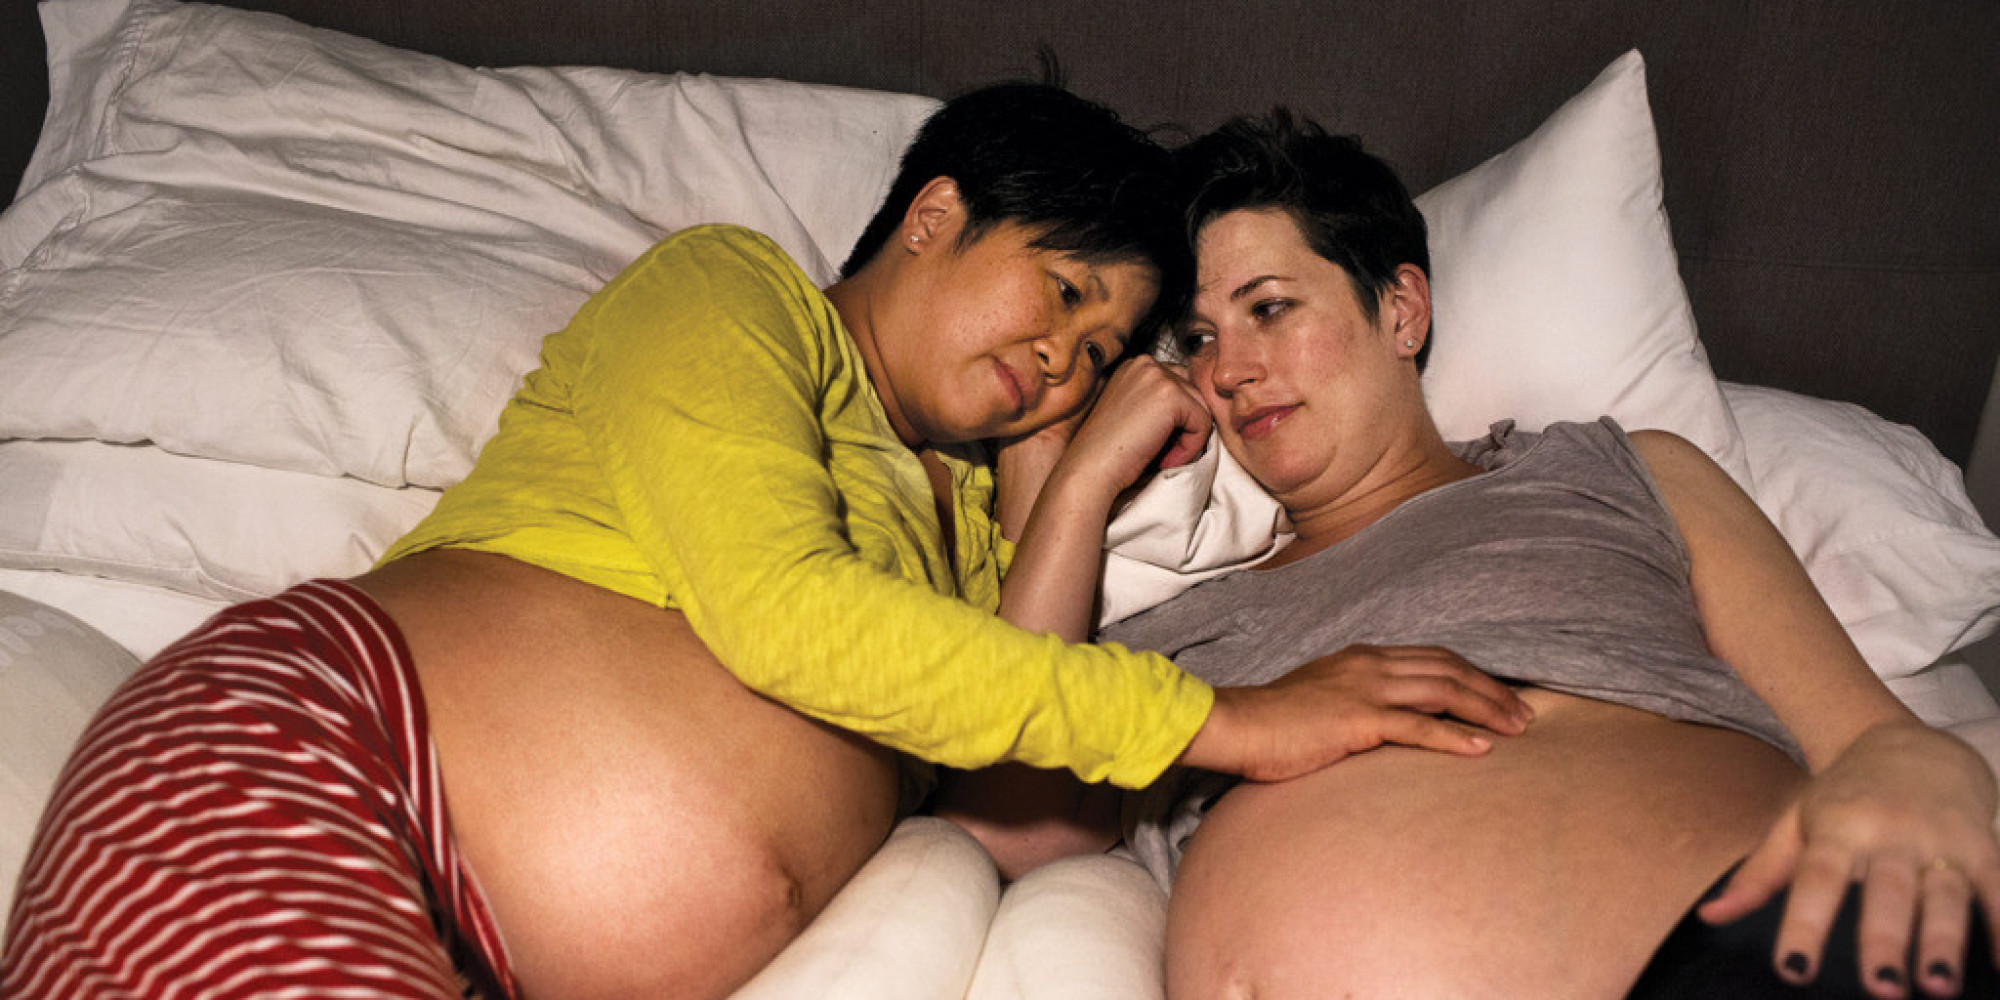 Lesbian Pregnancy 112